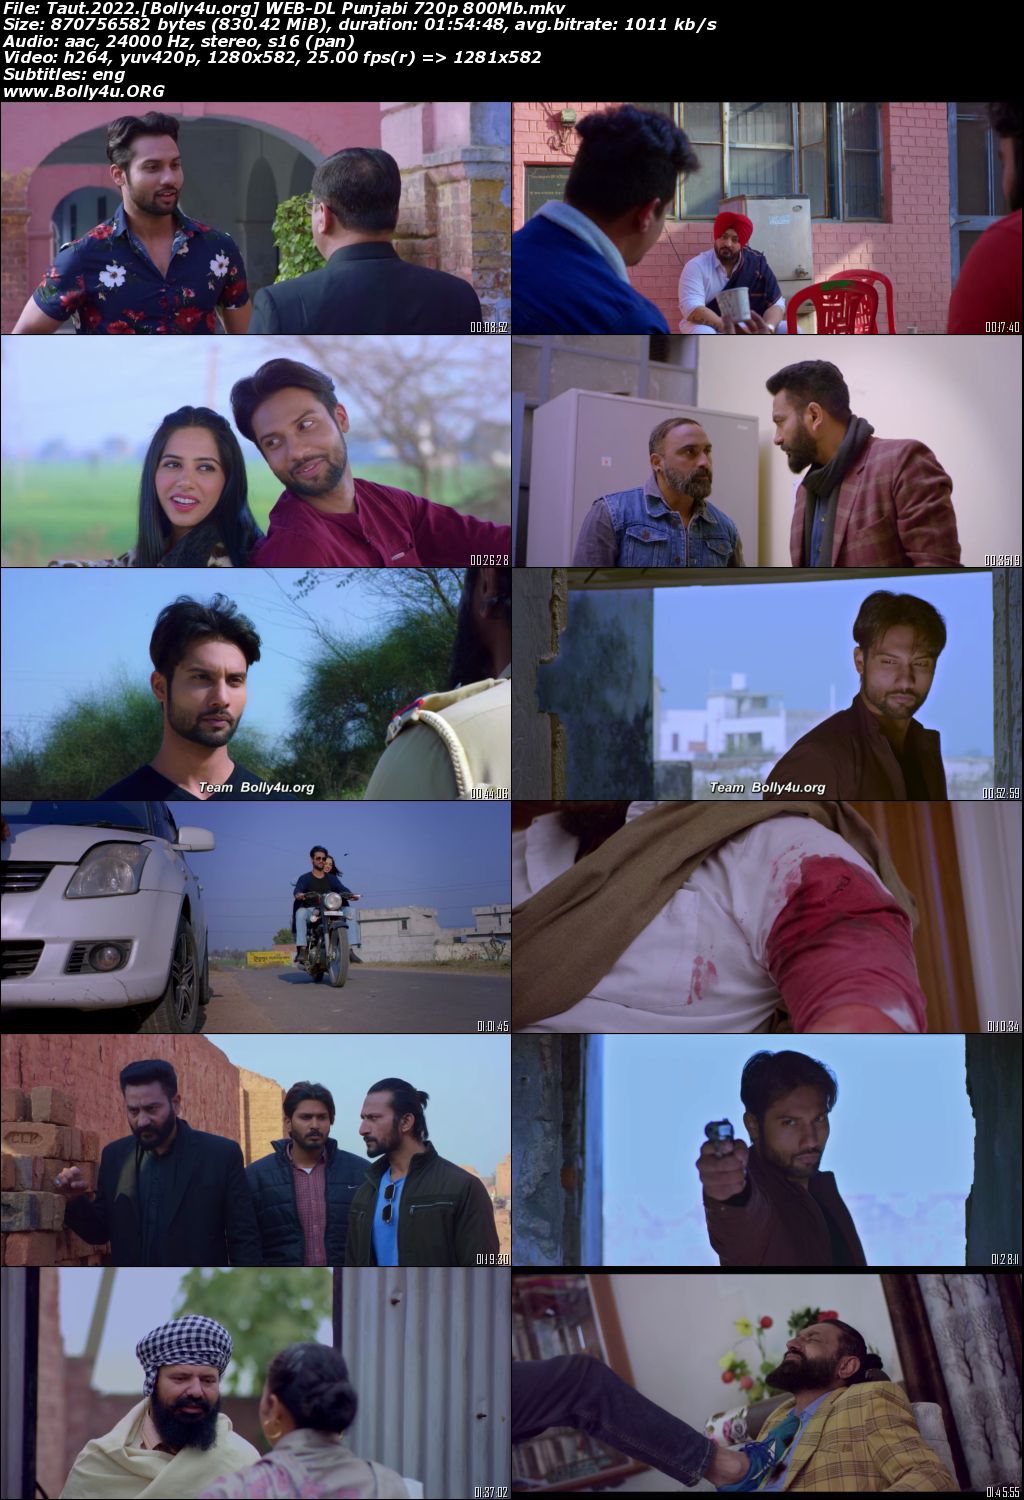 Taut 2022 WEB-DL Punjabi Full Movie Download 720p 480p